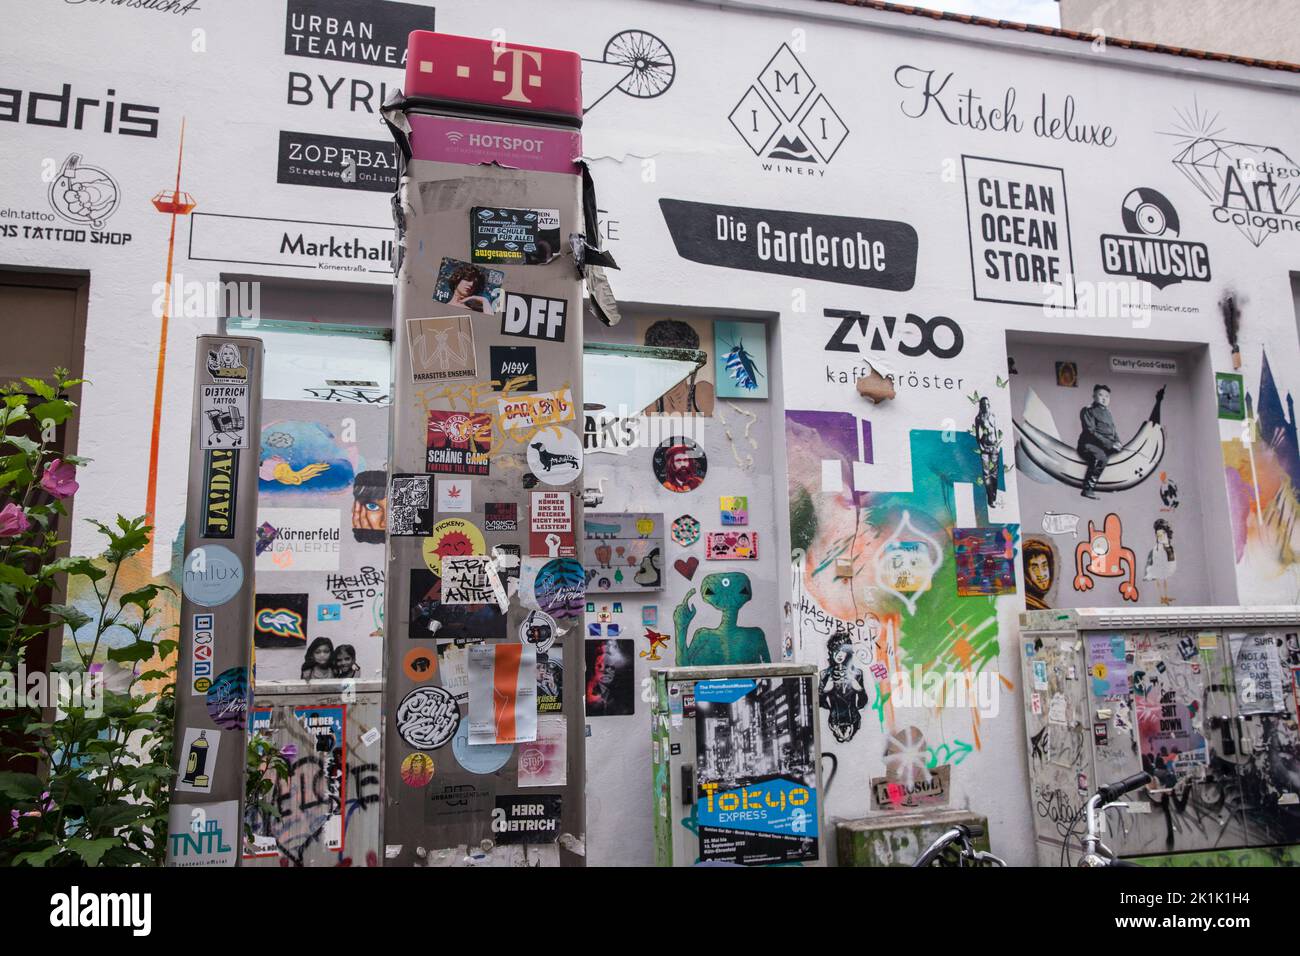 Pared de la casa y teléfono público con graffitis, pasta y logotipos de las tiendas situadas aquí, calle Koerner en el distrito de Ehrenfeld, Colonia, alemán Hausw Foto de stock